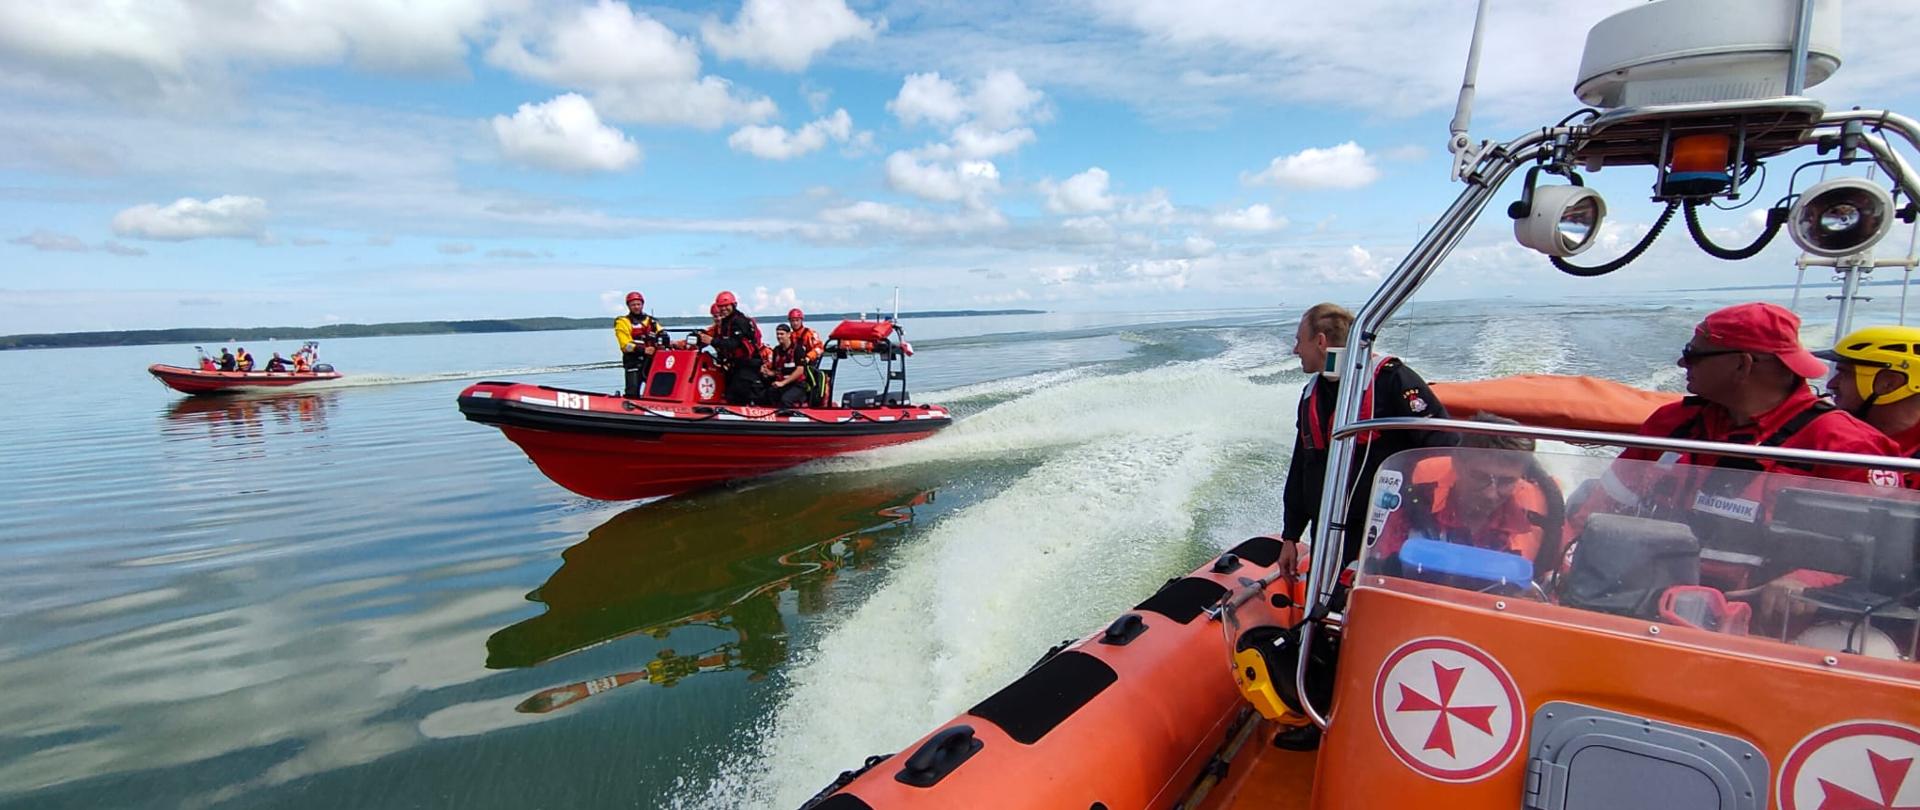 Trzy pomarańczowe łodzie motorowe płyną przez wody Zalewu Wiślanego. Na statkach znajdują się nurkowie państwowej straży pożarnej oraz służby morskiej.